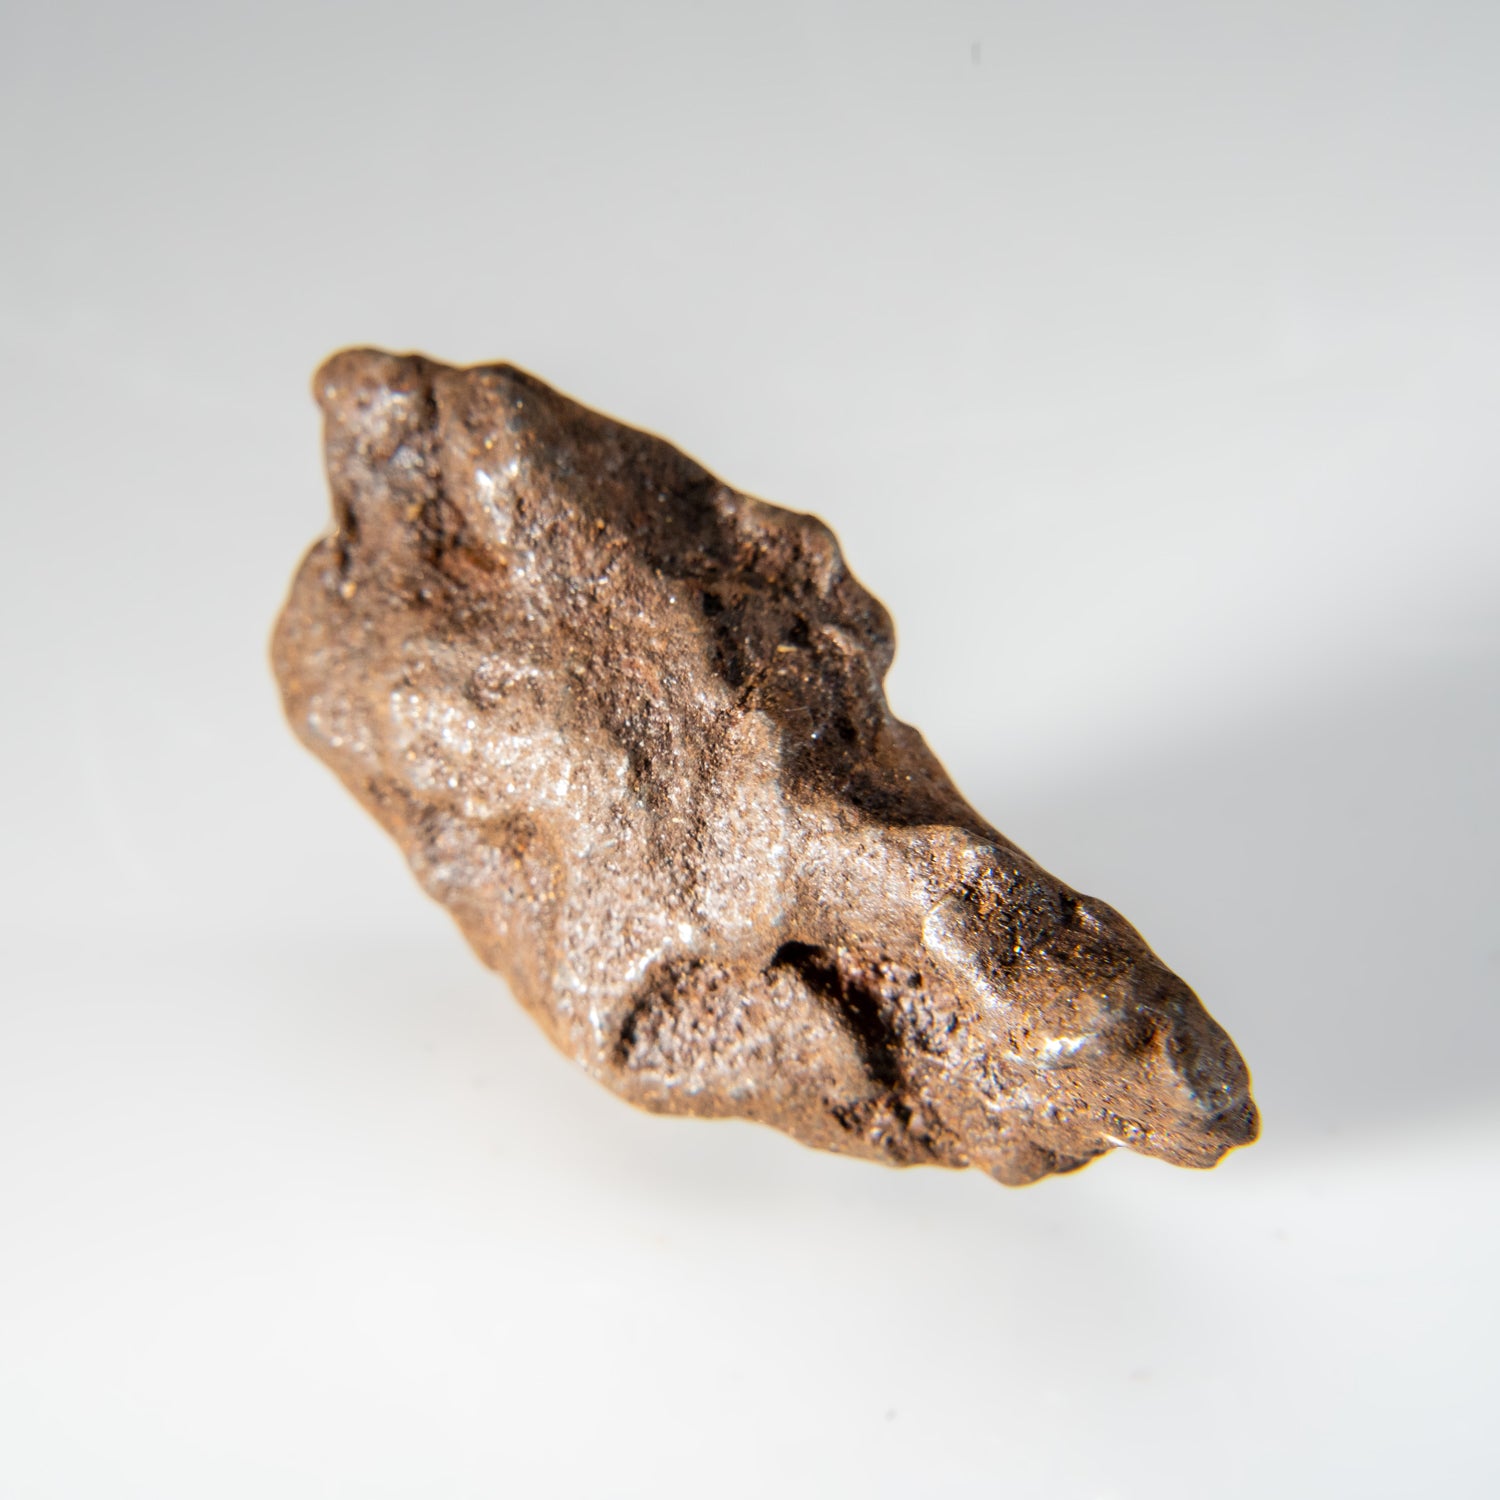 Genuine Gebel Kamil Meteorite from Egypt (46.5 grams)